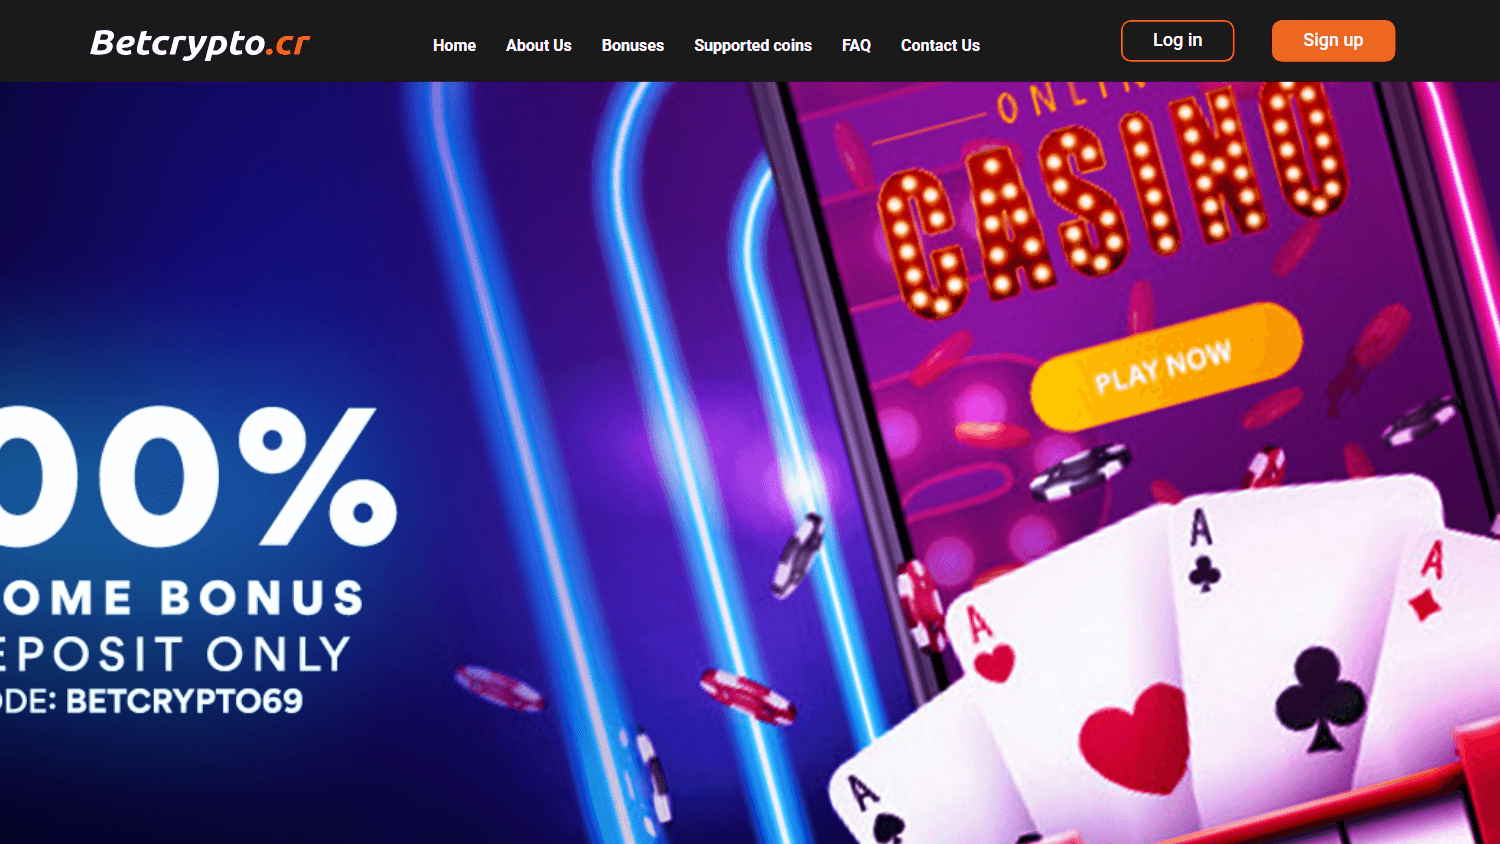 betcrypto_casino_homepage_desktop